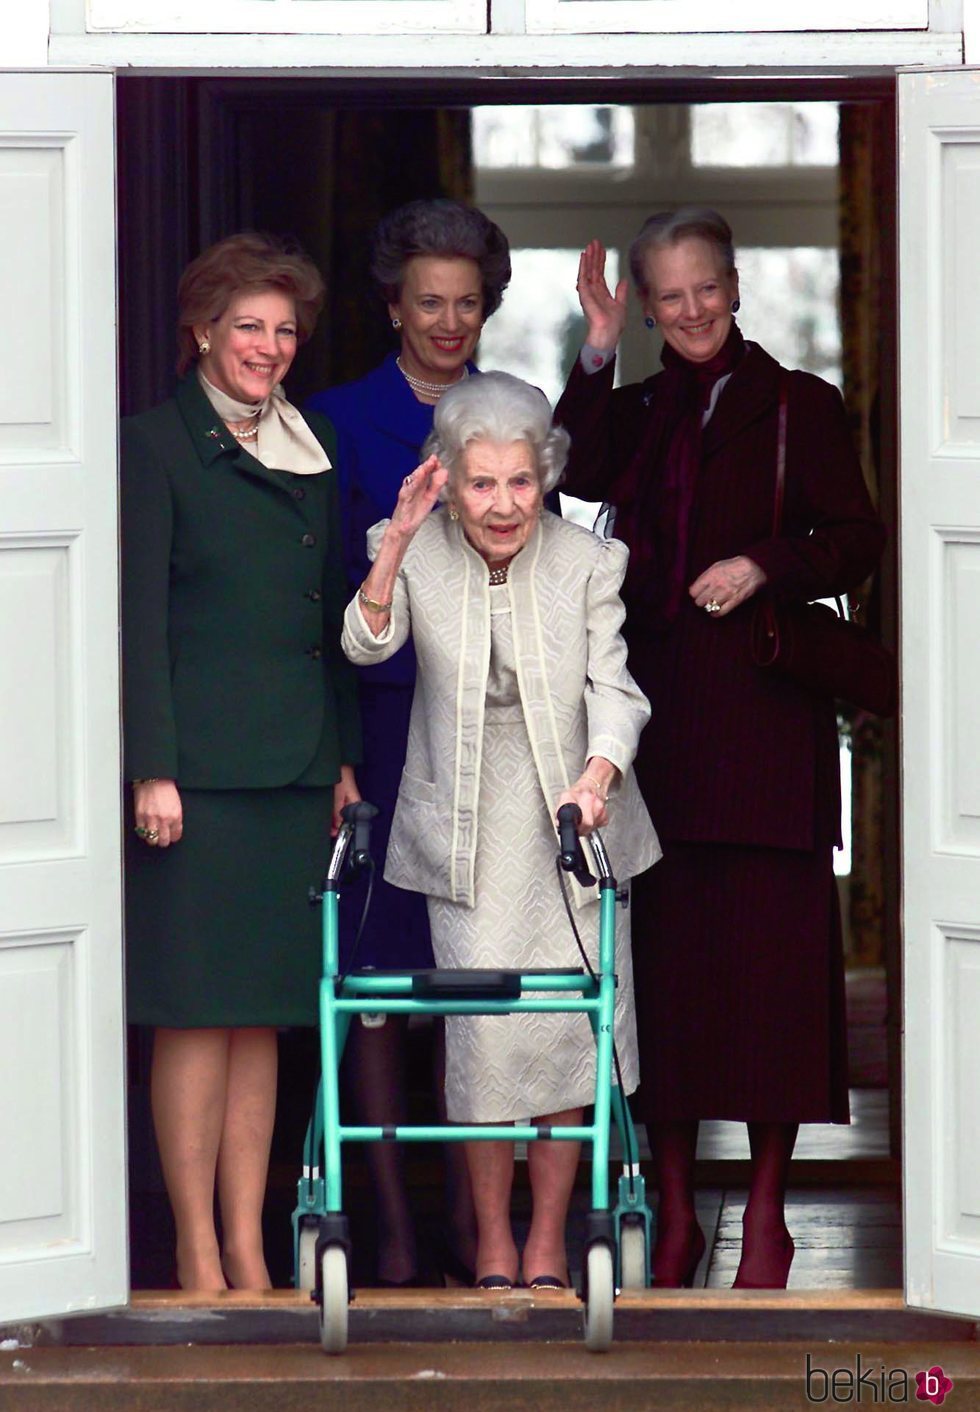 La Reina Ingrid de Dinamarca junto a sus hijas Margarita, Ana María y Benedicta